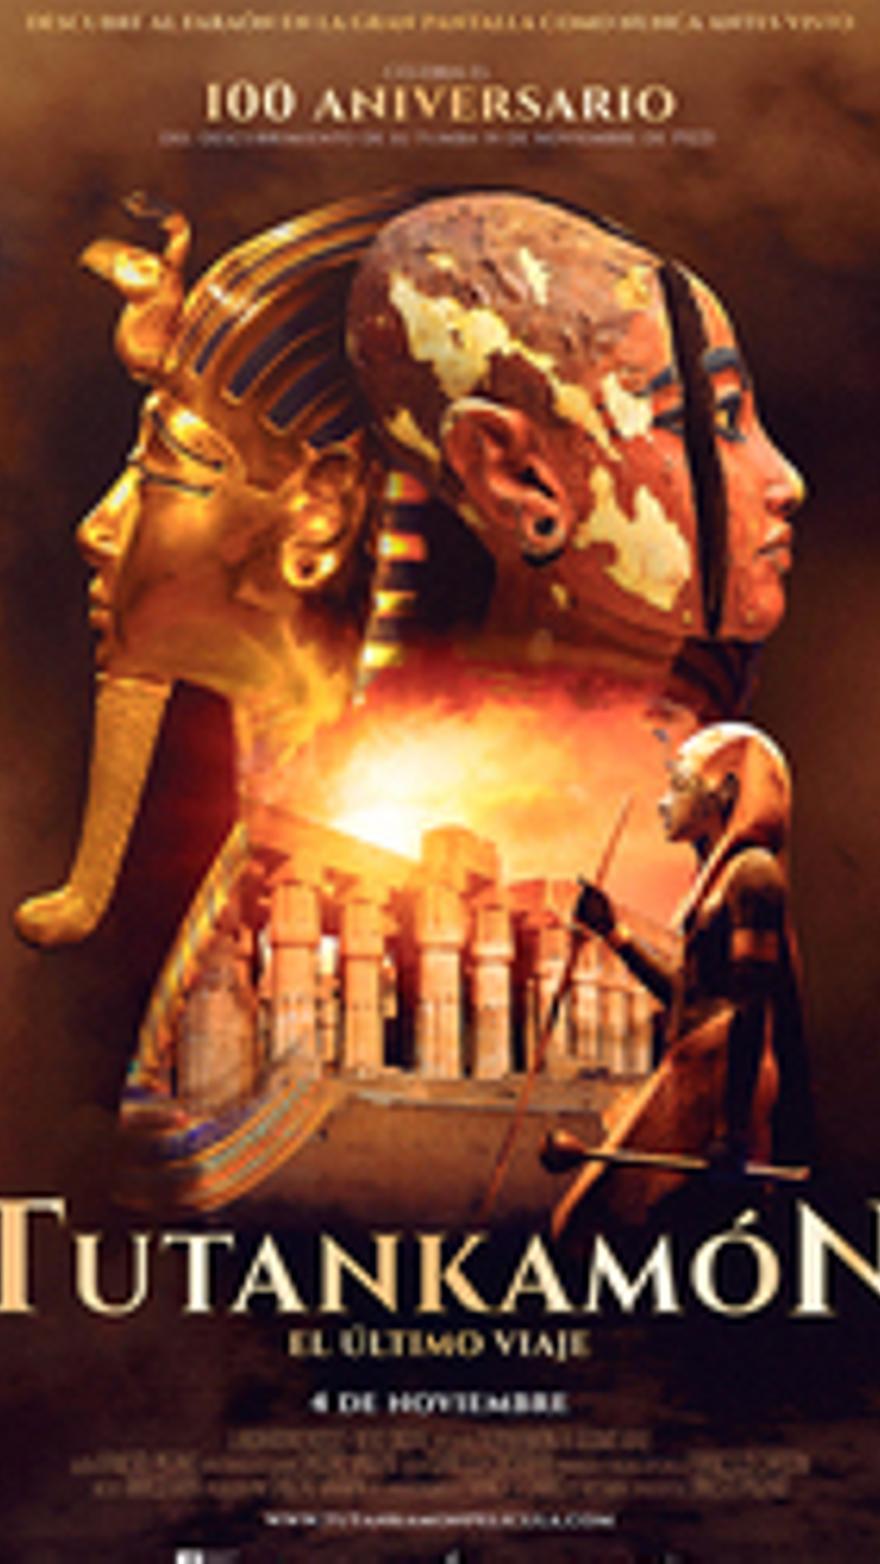 Tutankamón: El último viaje